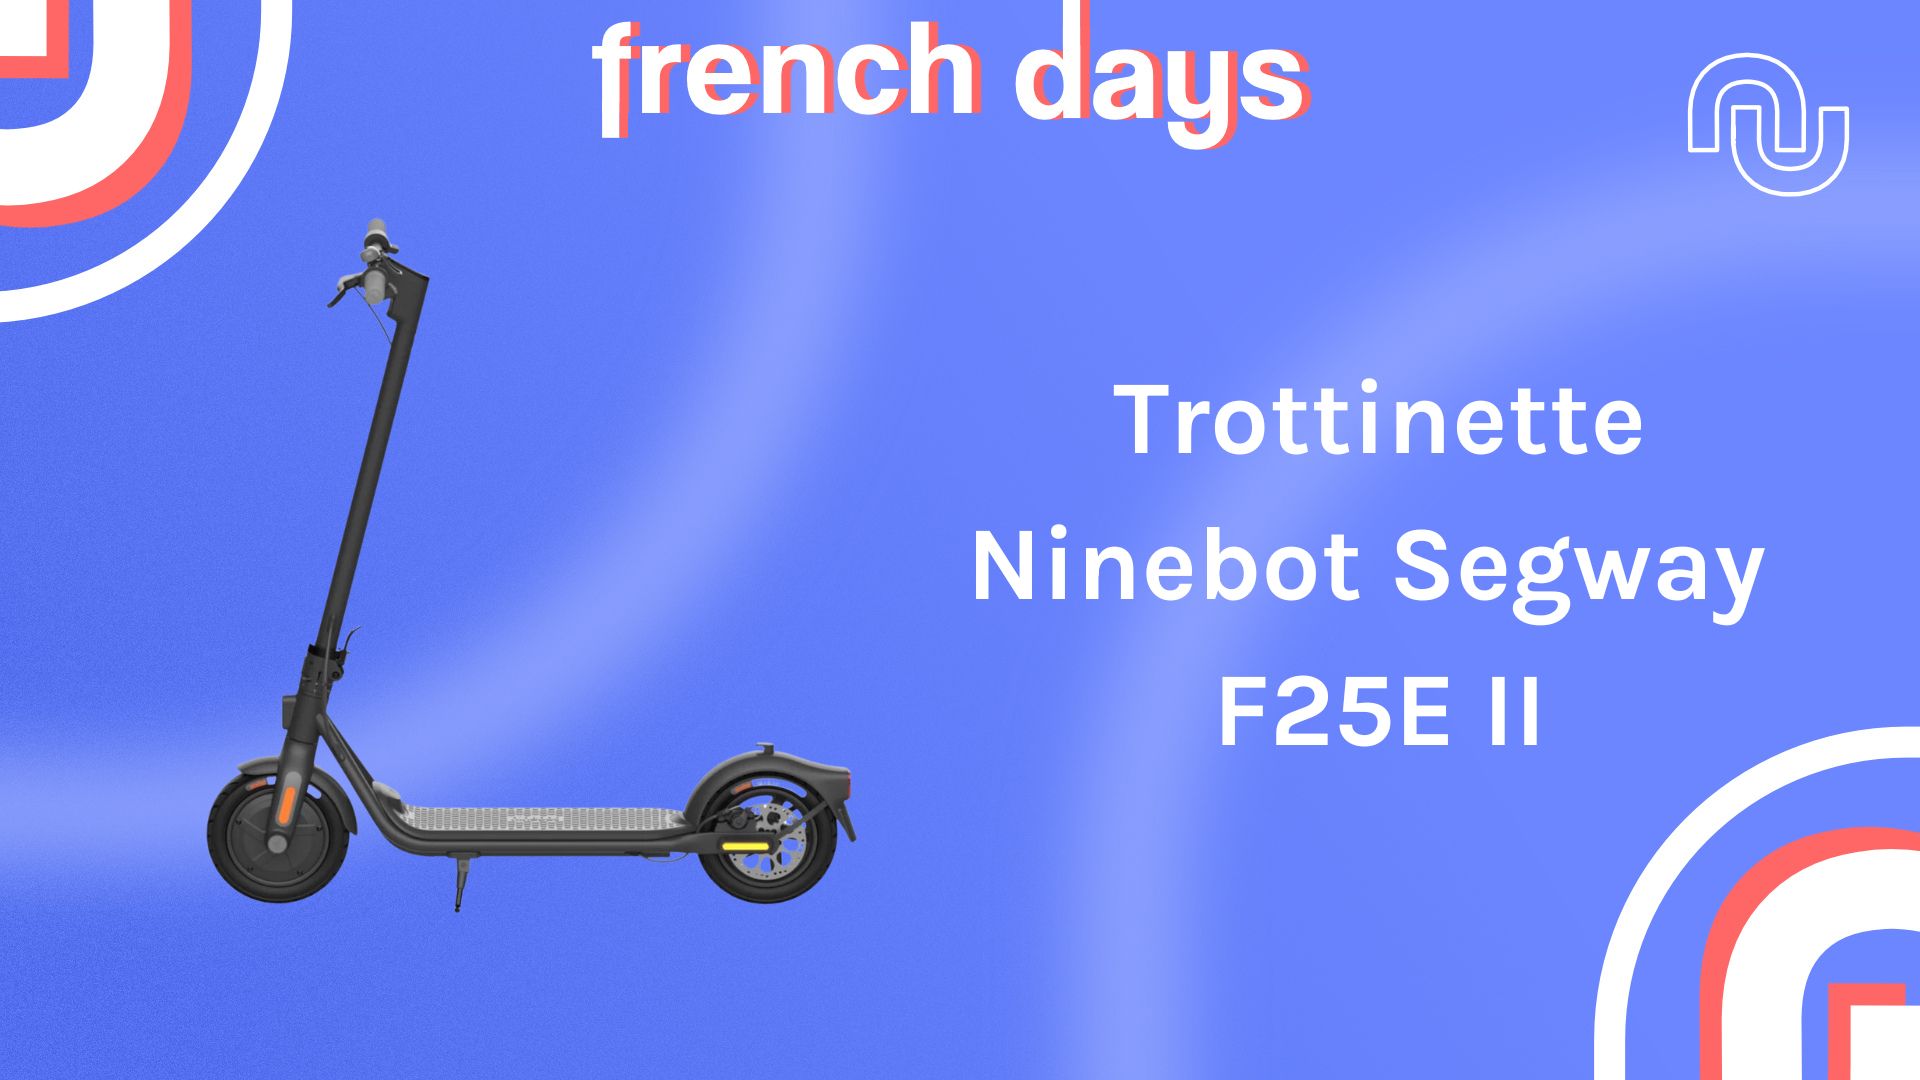 Les French Days débutent fort avec cette offre sur l'aspirateur